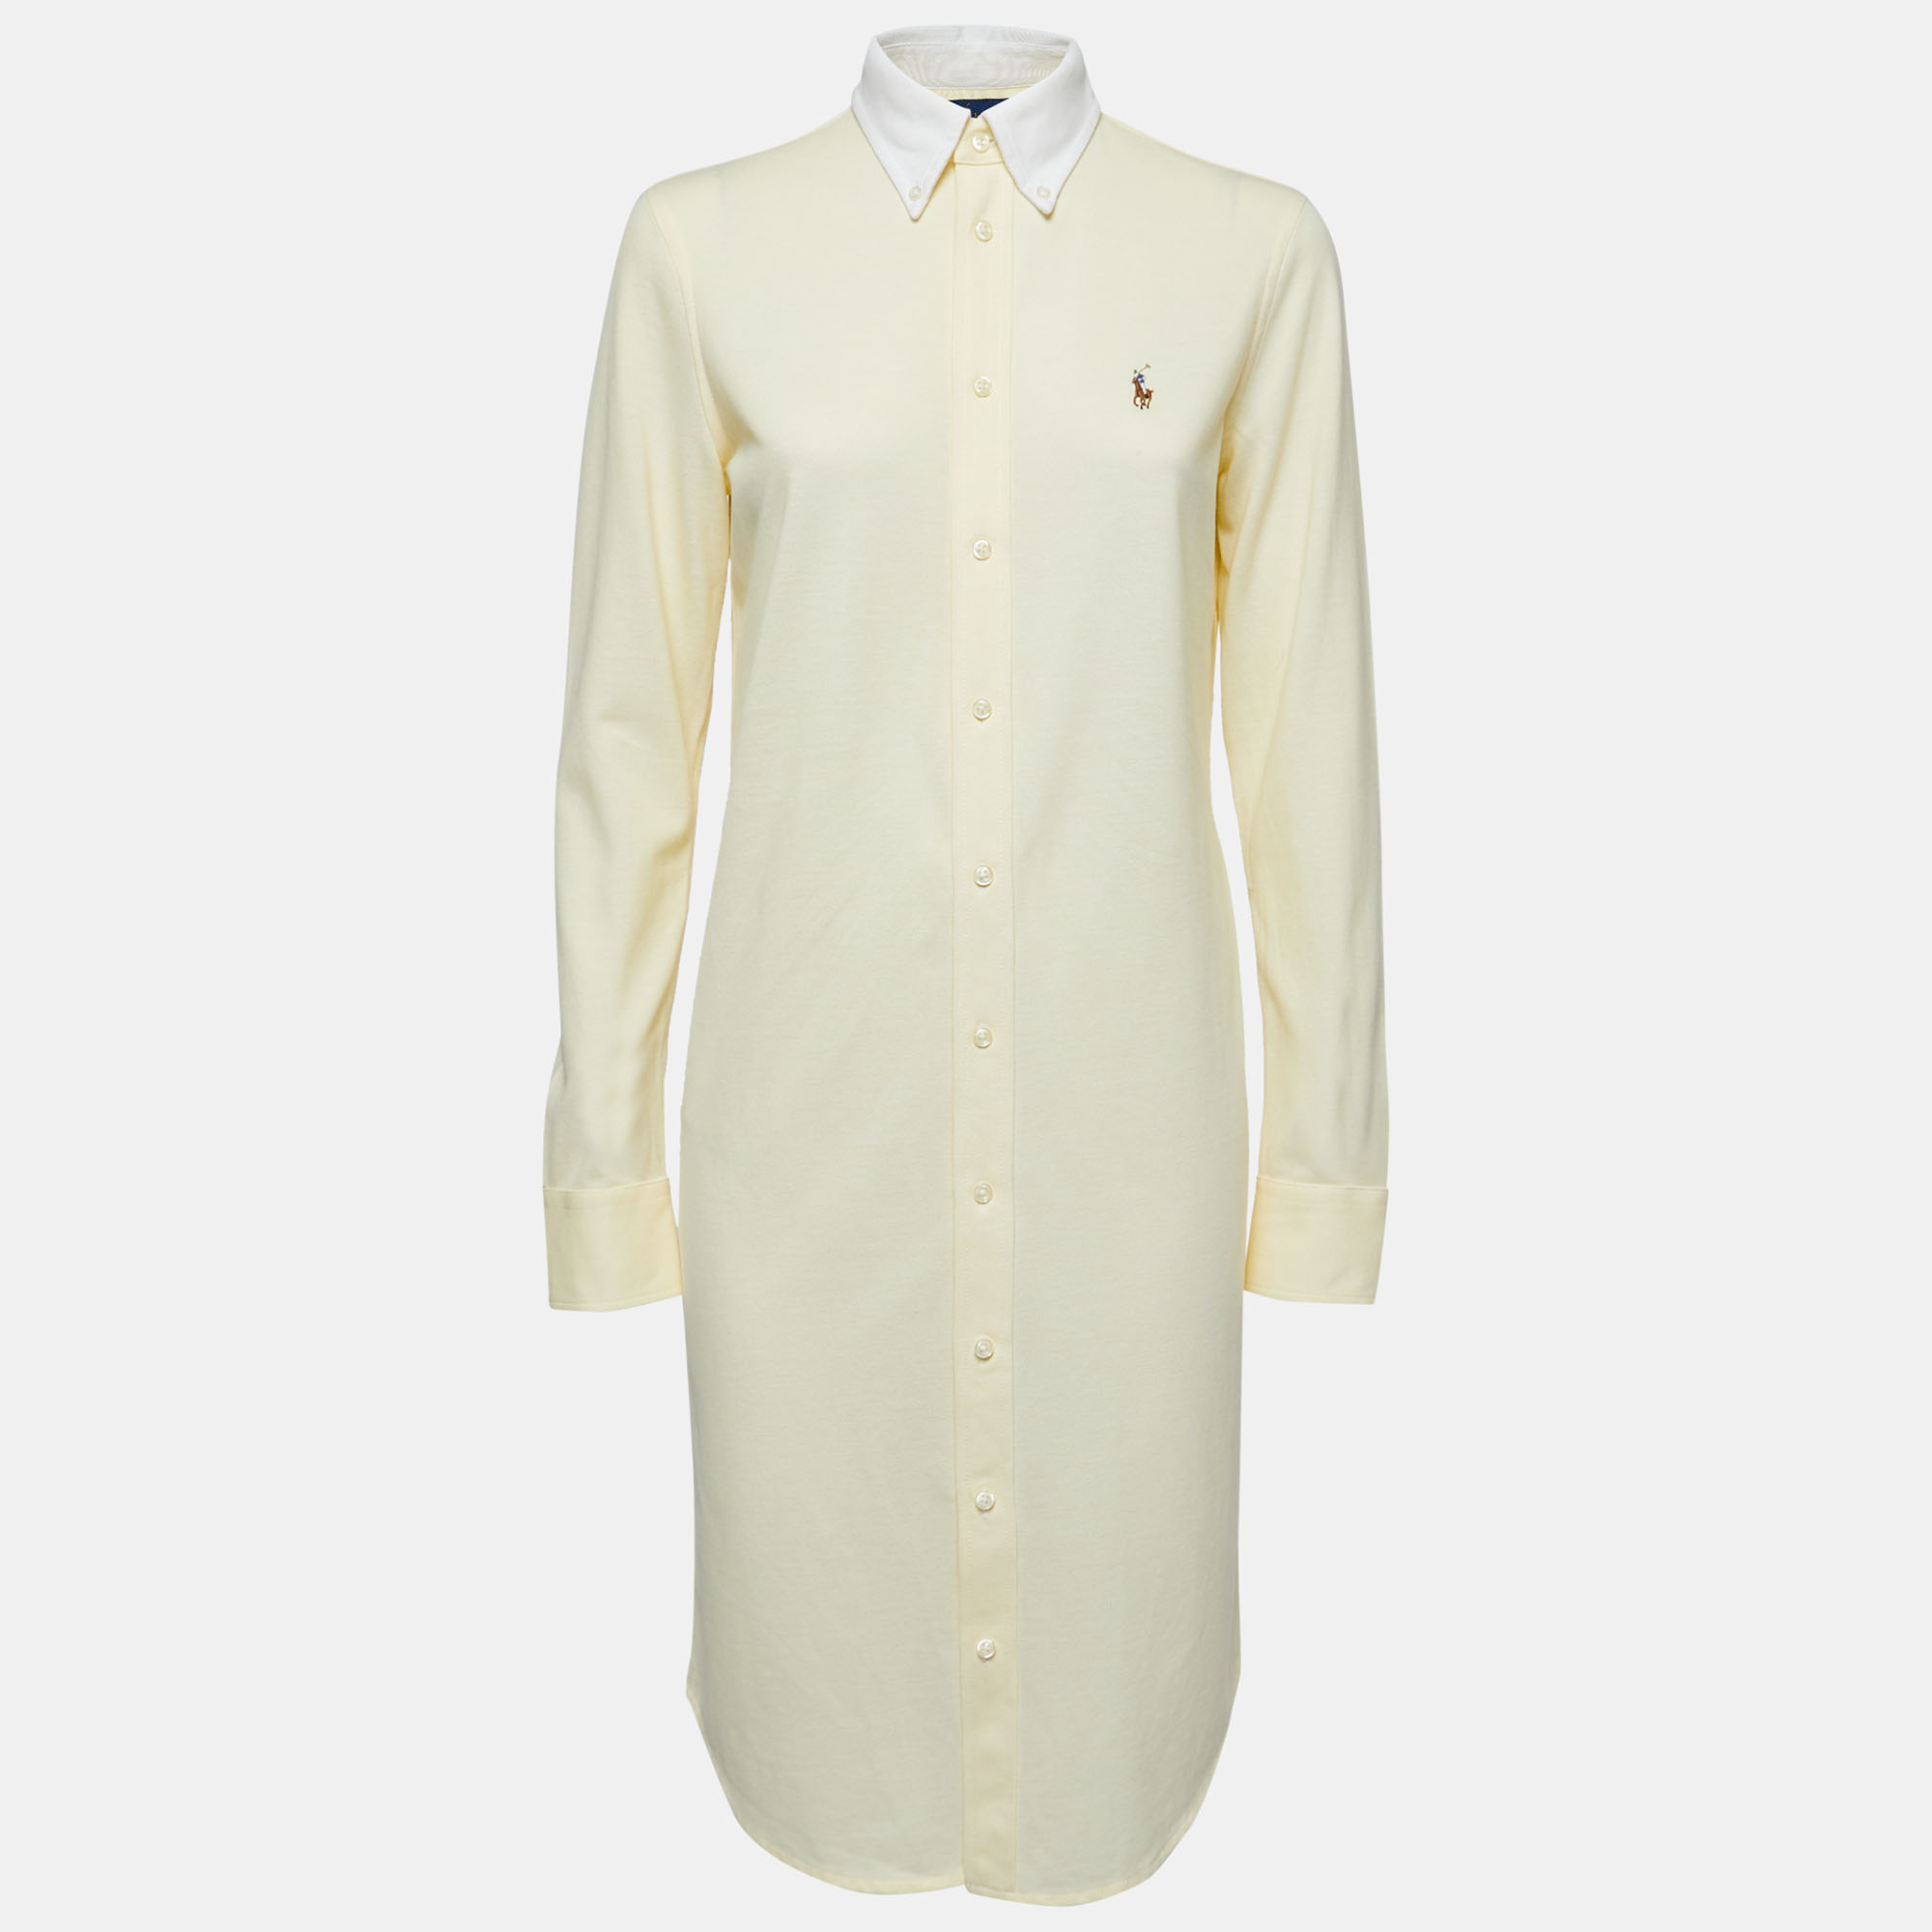 Ralph Lauren Yellow Knit Oxford Polo Shirt Dress S